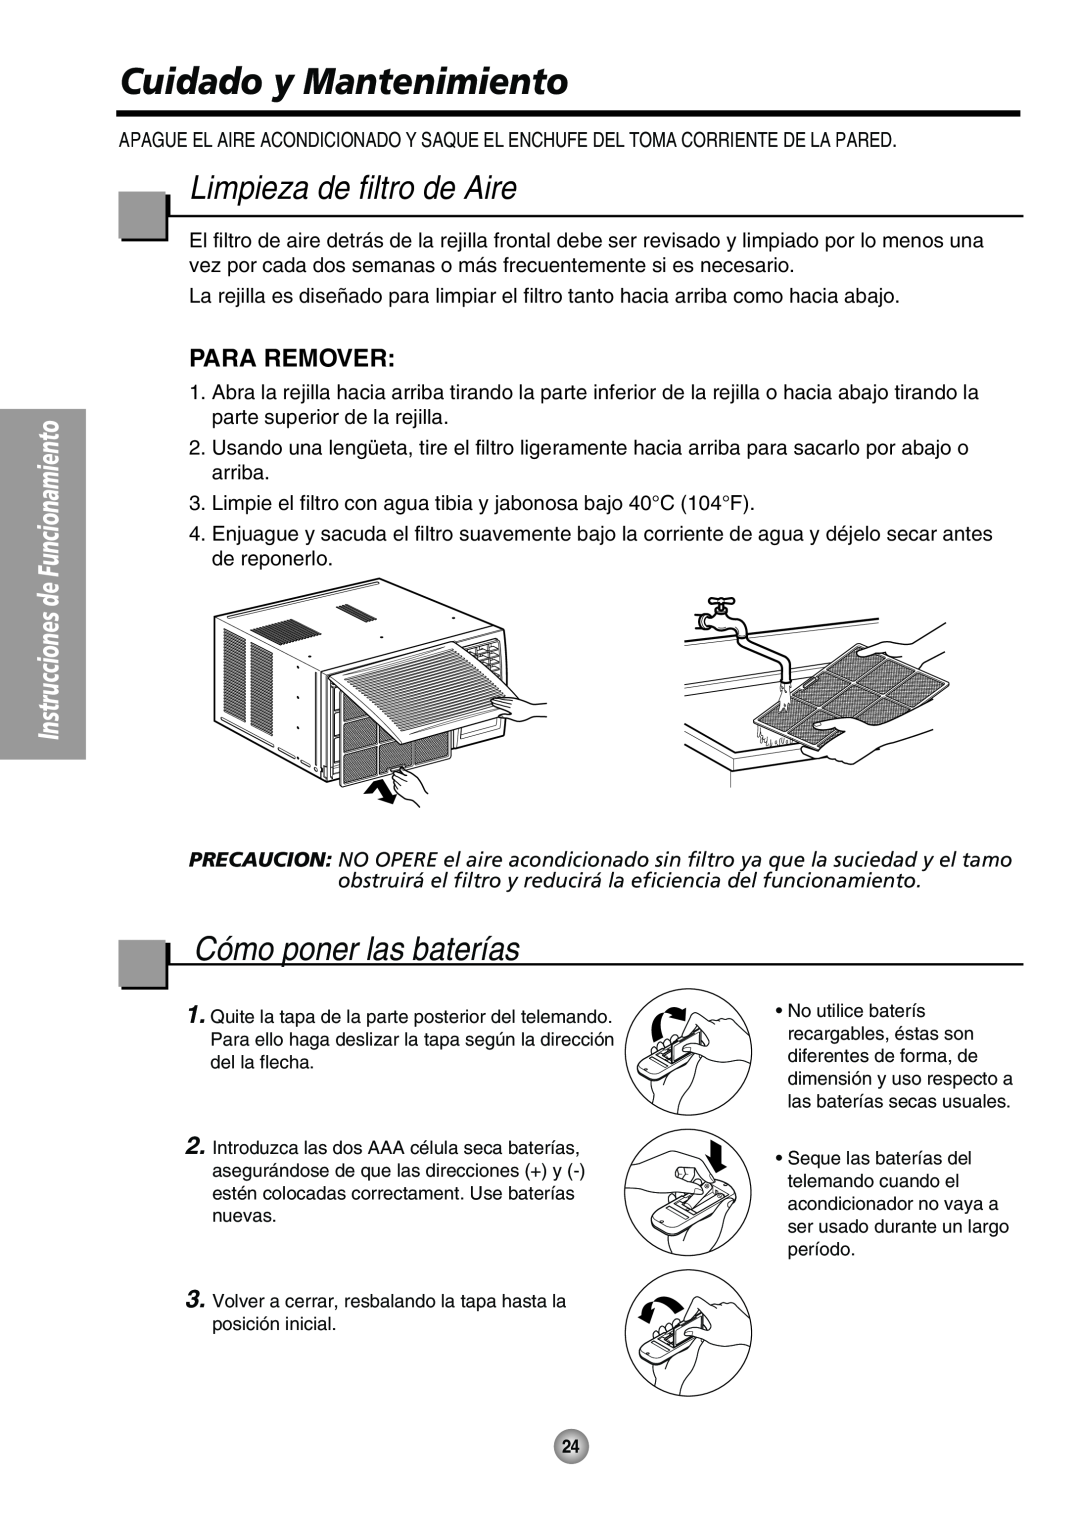 Panasonic CW-XC80HU manual Cuidado y Mantenimiento, Limpieza de filtro de Aire, Cómo poner las baterías, Para Remover 